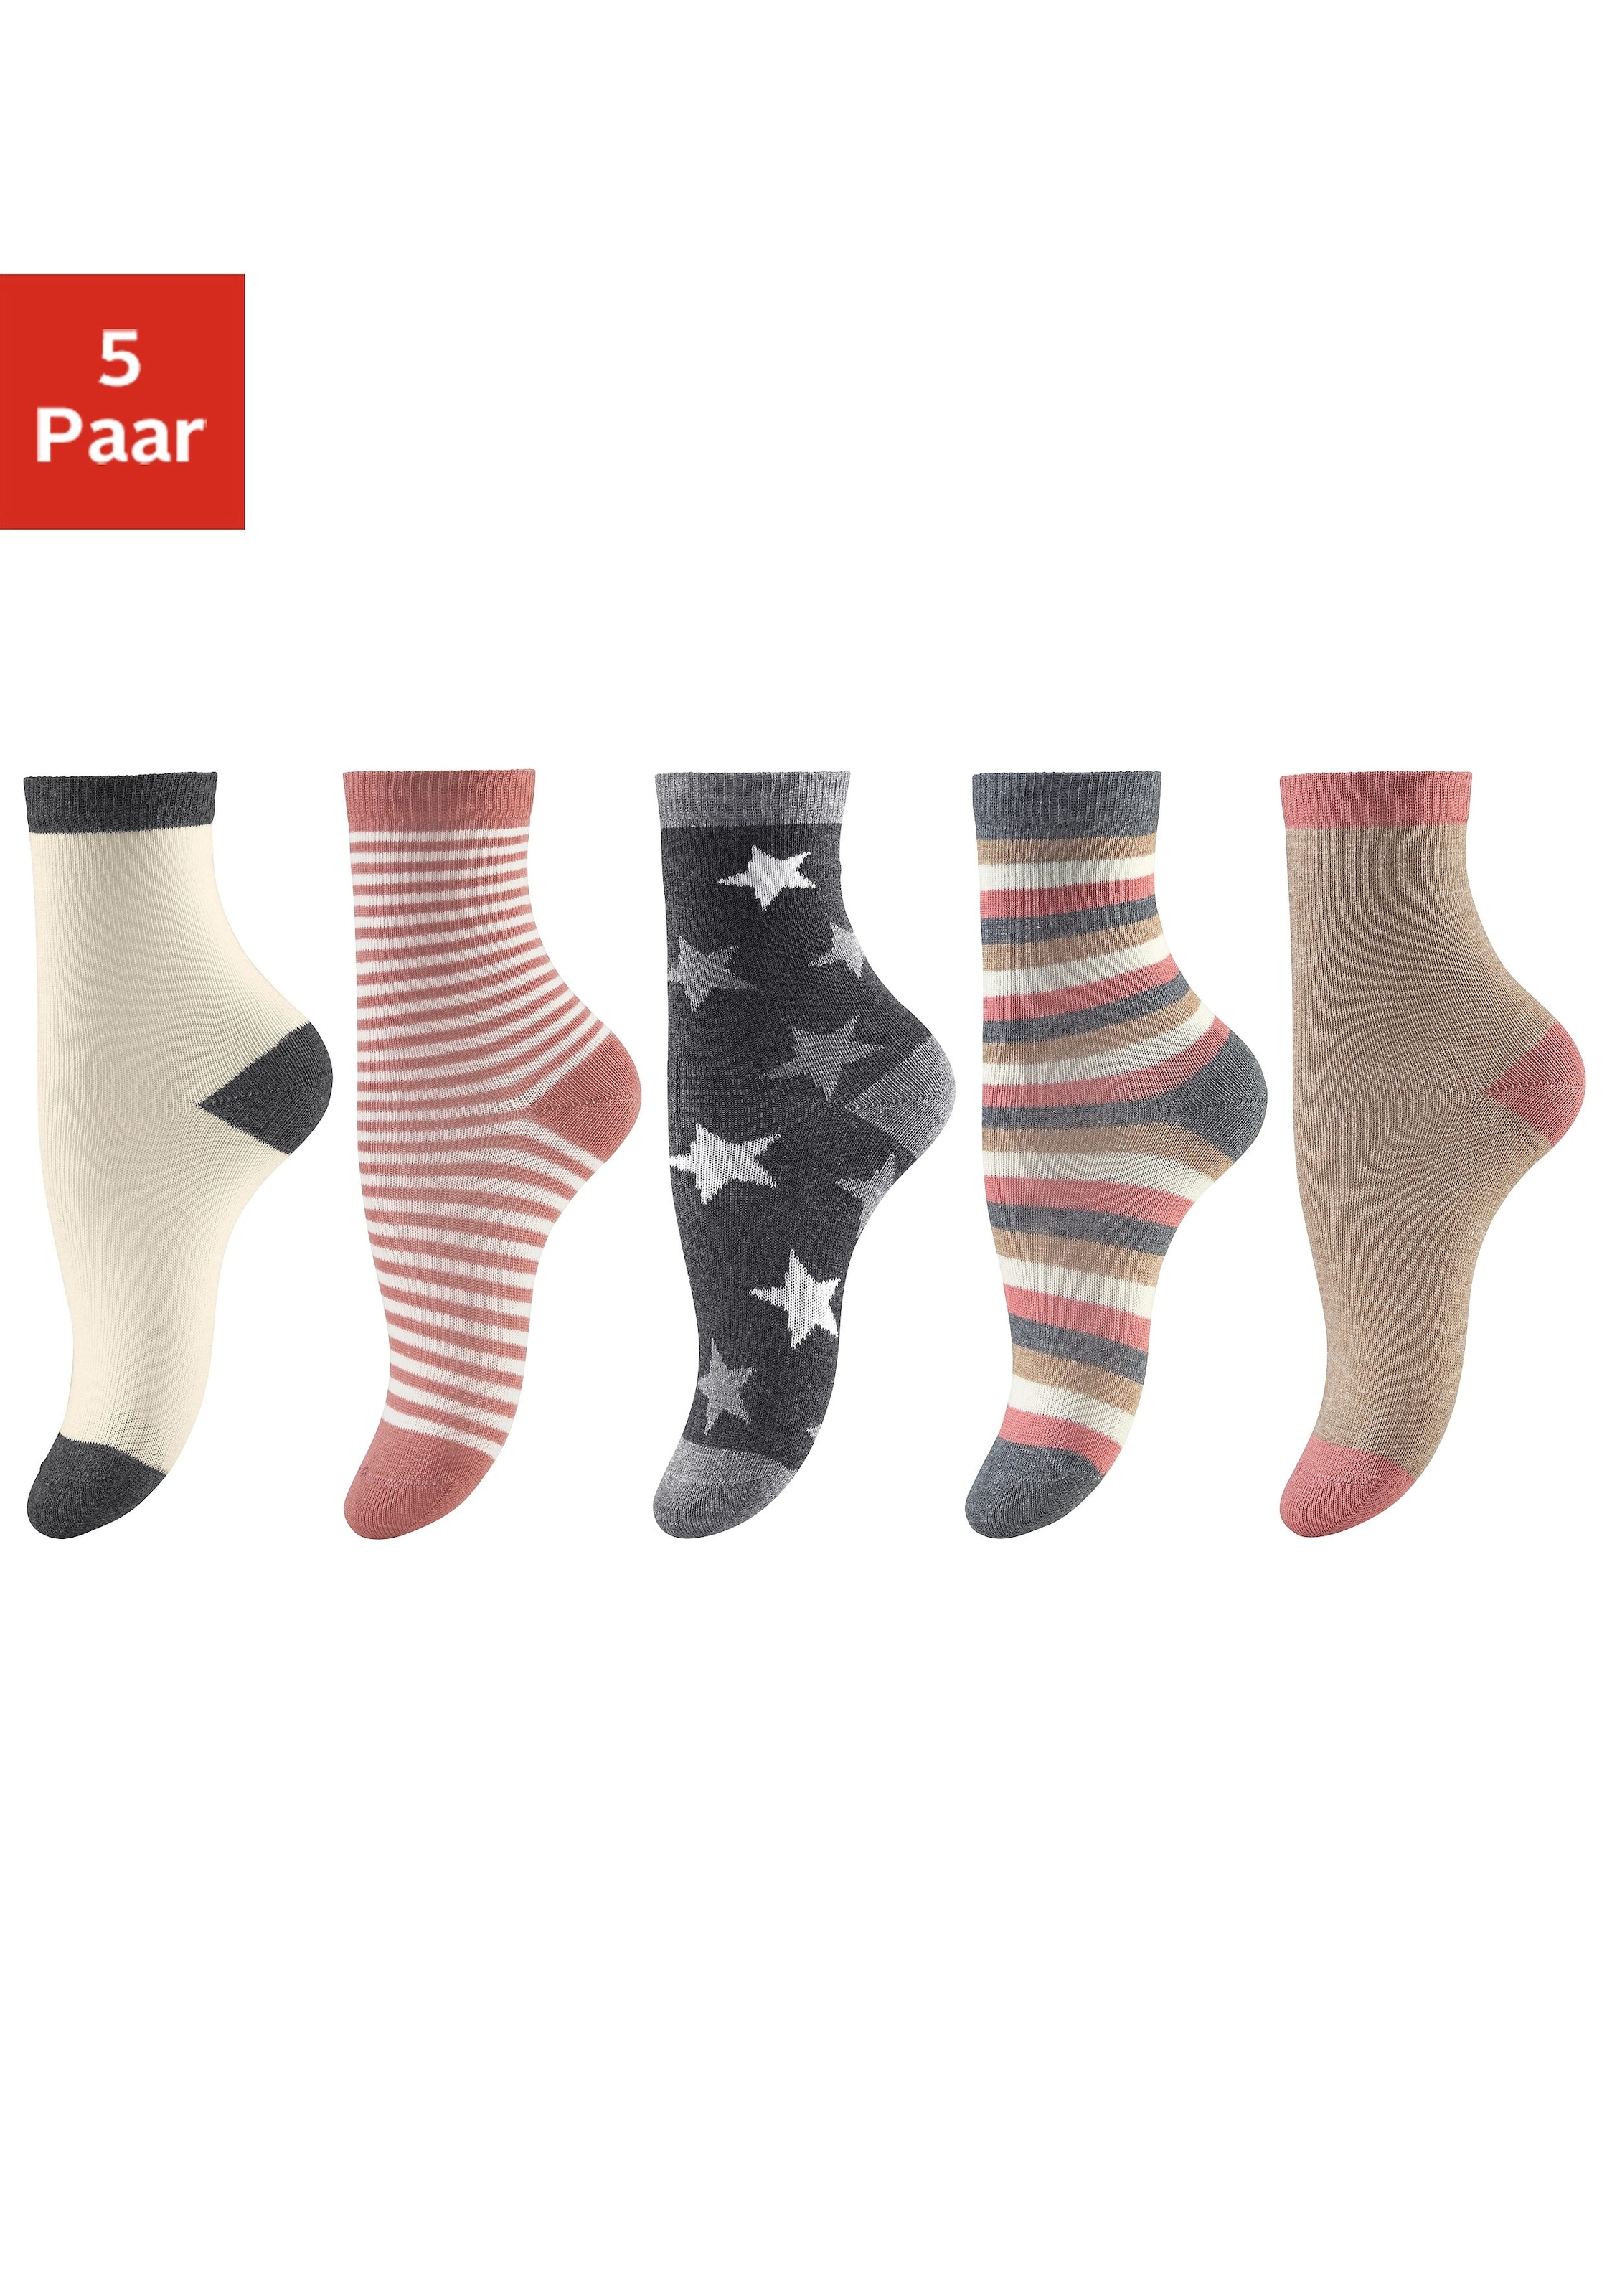 versandkostenfrei auf verschiedenen Designs Paar), (5 Socken, in 5